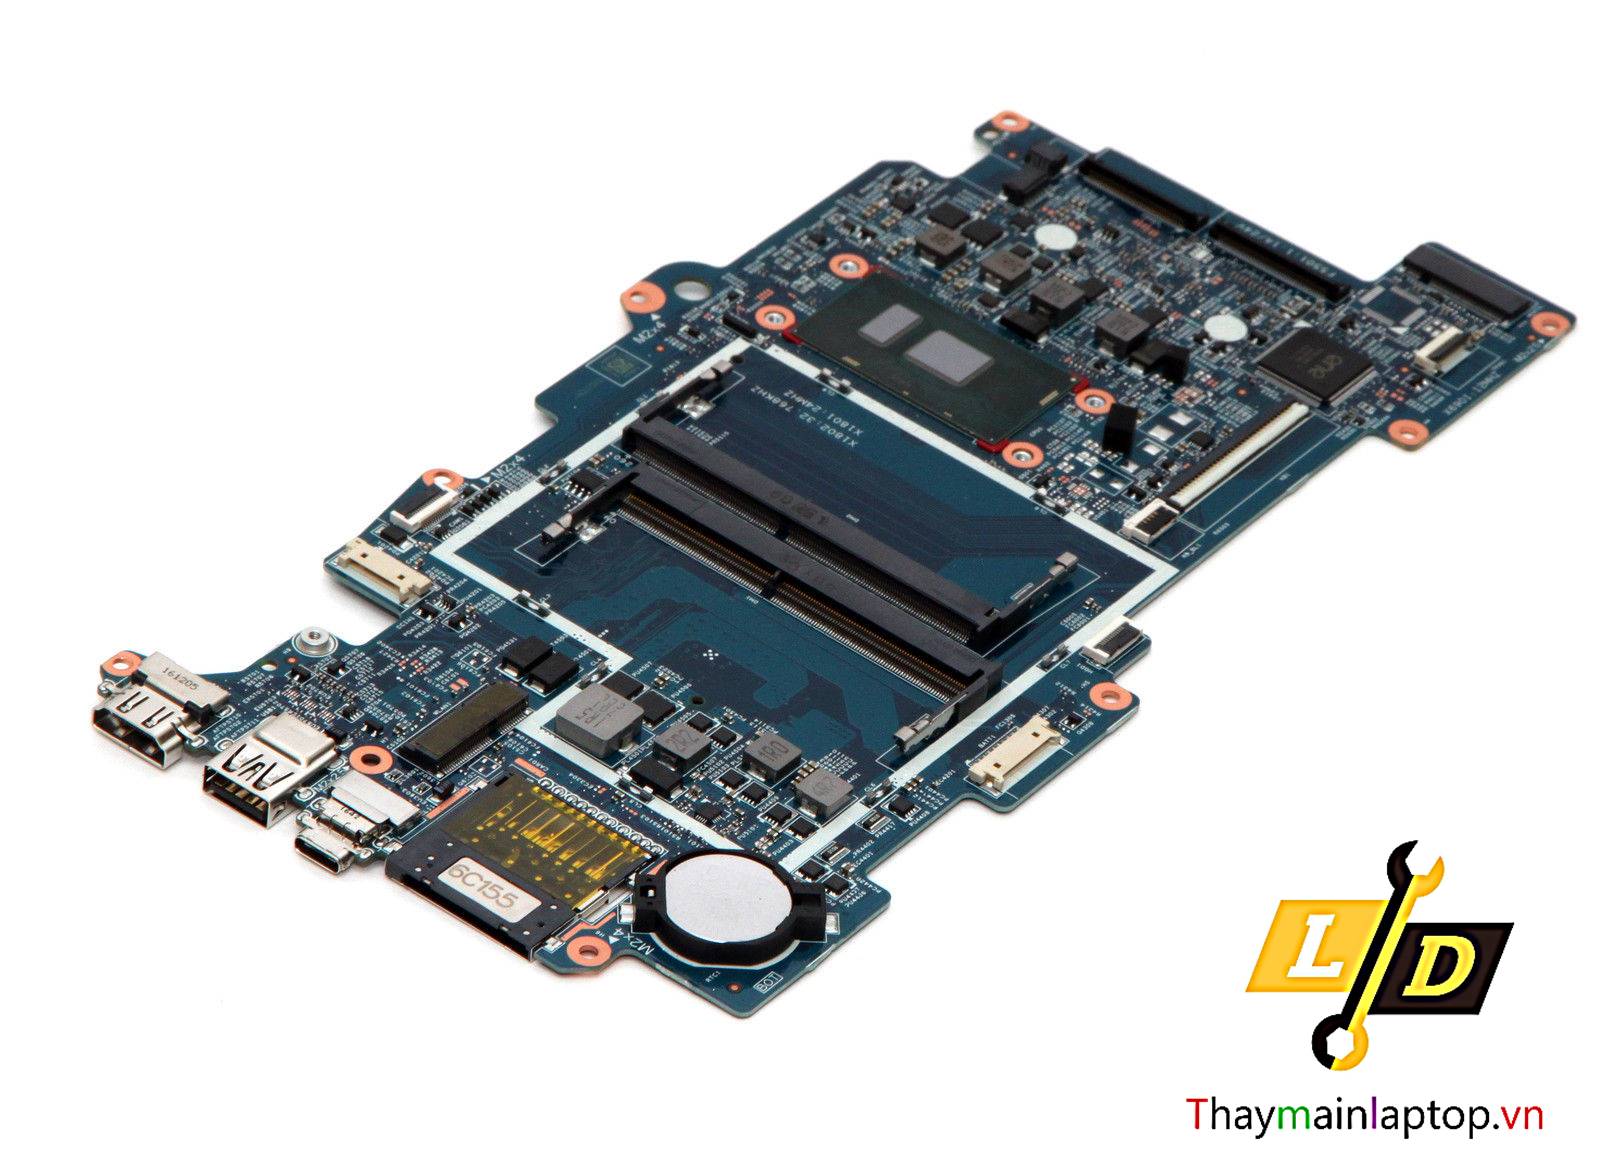 Main HP ENVY X360 M6-AQ CPU i5-7200U 2.5Ghz